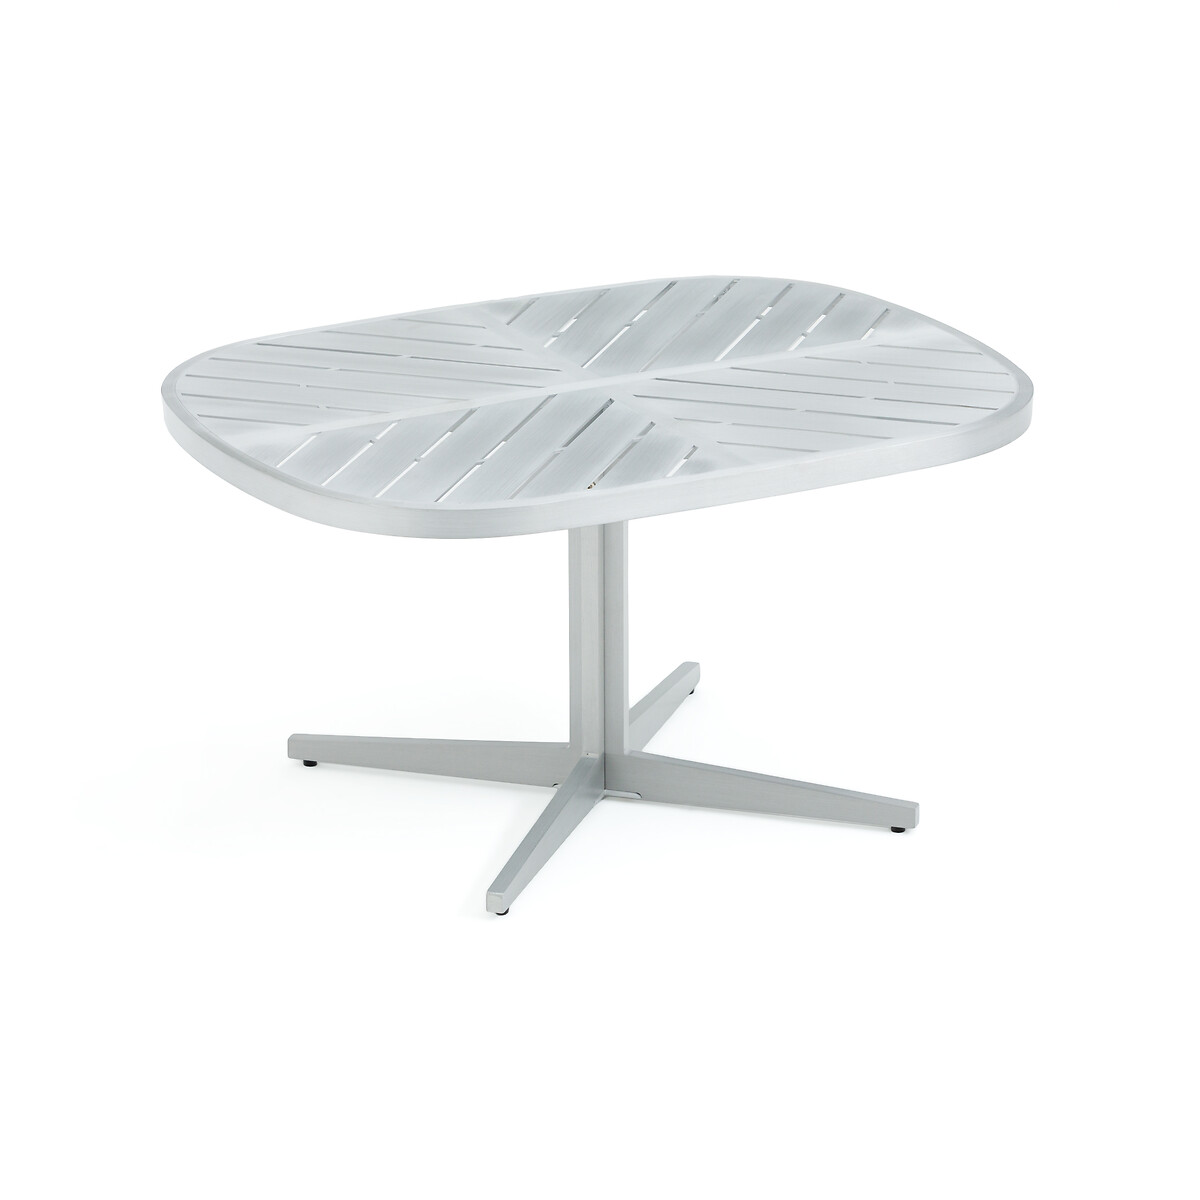 Стол журнальный для сада из алюминия Kotanne единый размер серый стол диванный из сплава алюминия calendes единый размер серый